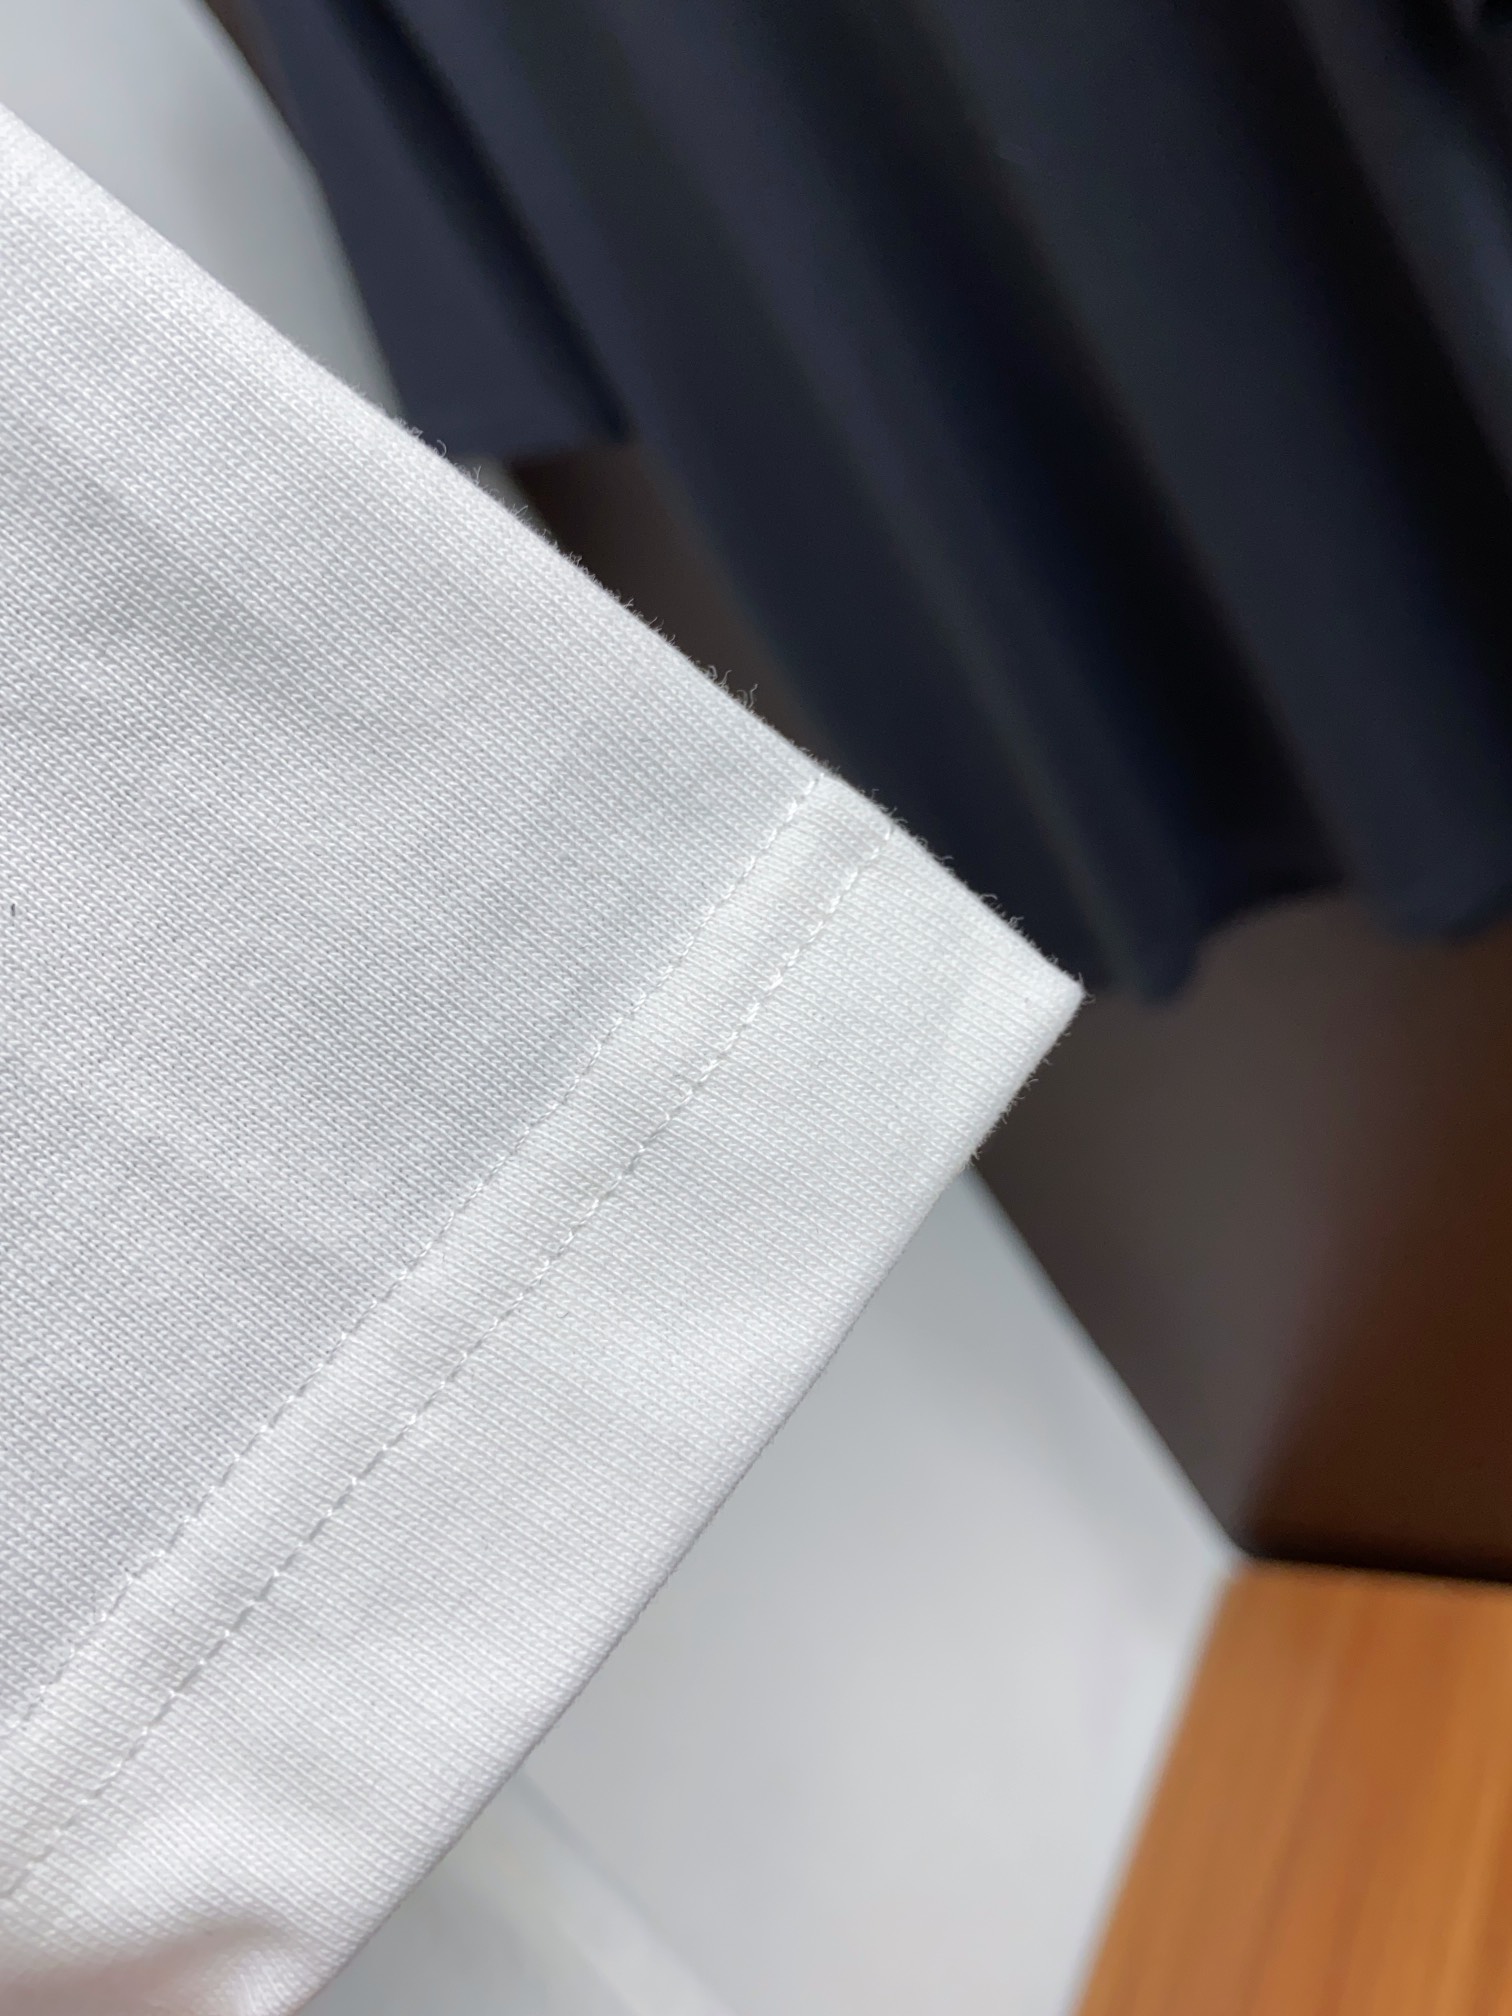 kenzo24s夏季全品相圆领短袖T恤采用280g纯棉面料.胸口年印花对应后幅印花满满的立体感和高级感.